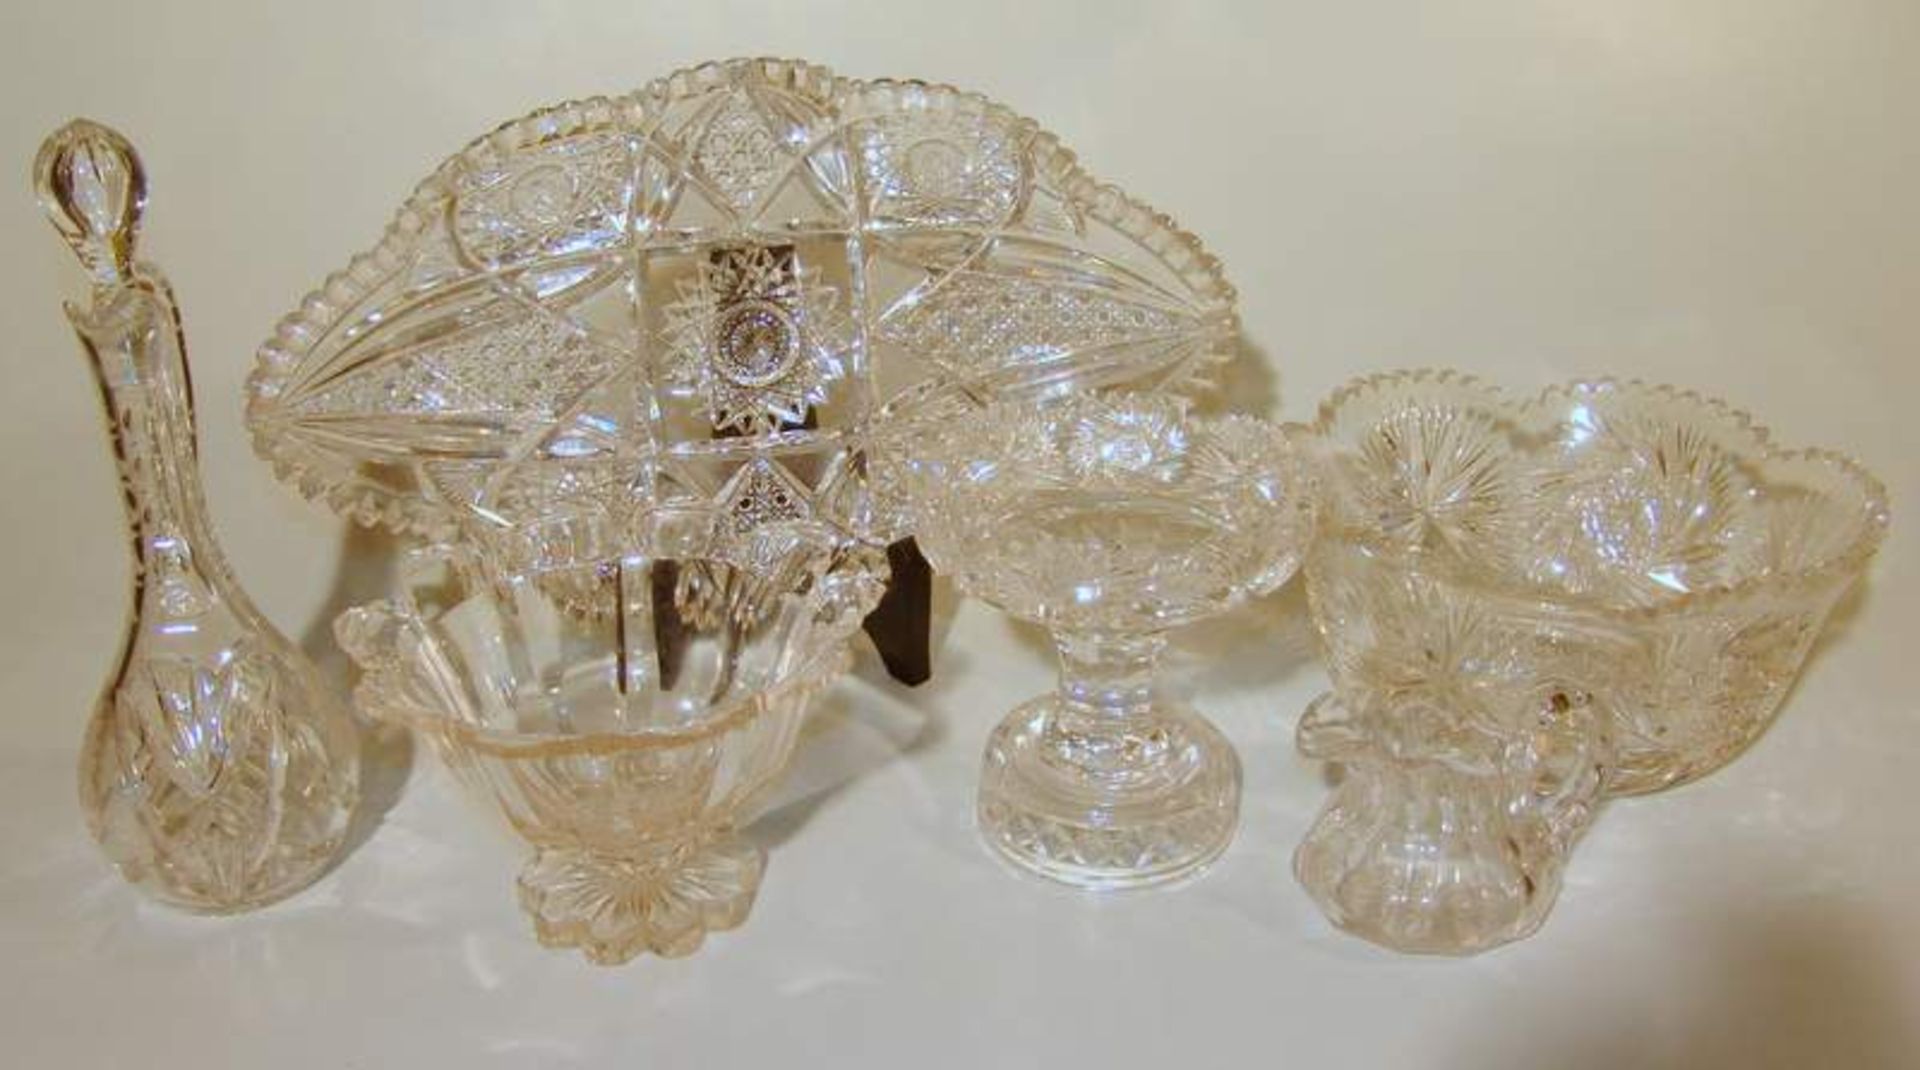 4-teiliges Konvolut Bleikristallglas, Böhmen, 20 Jhd.bestehend aus einer großen, ovalen Schale mit